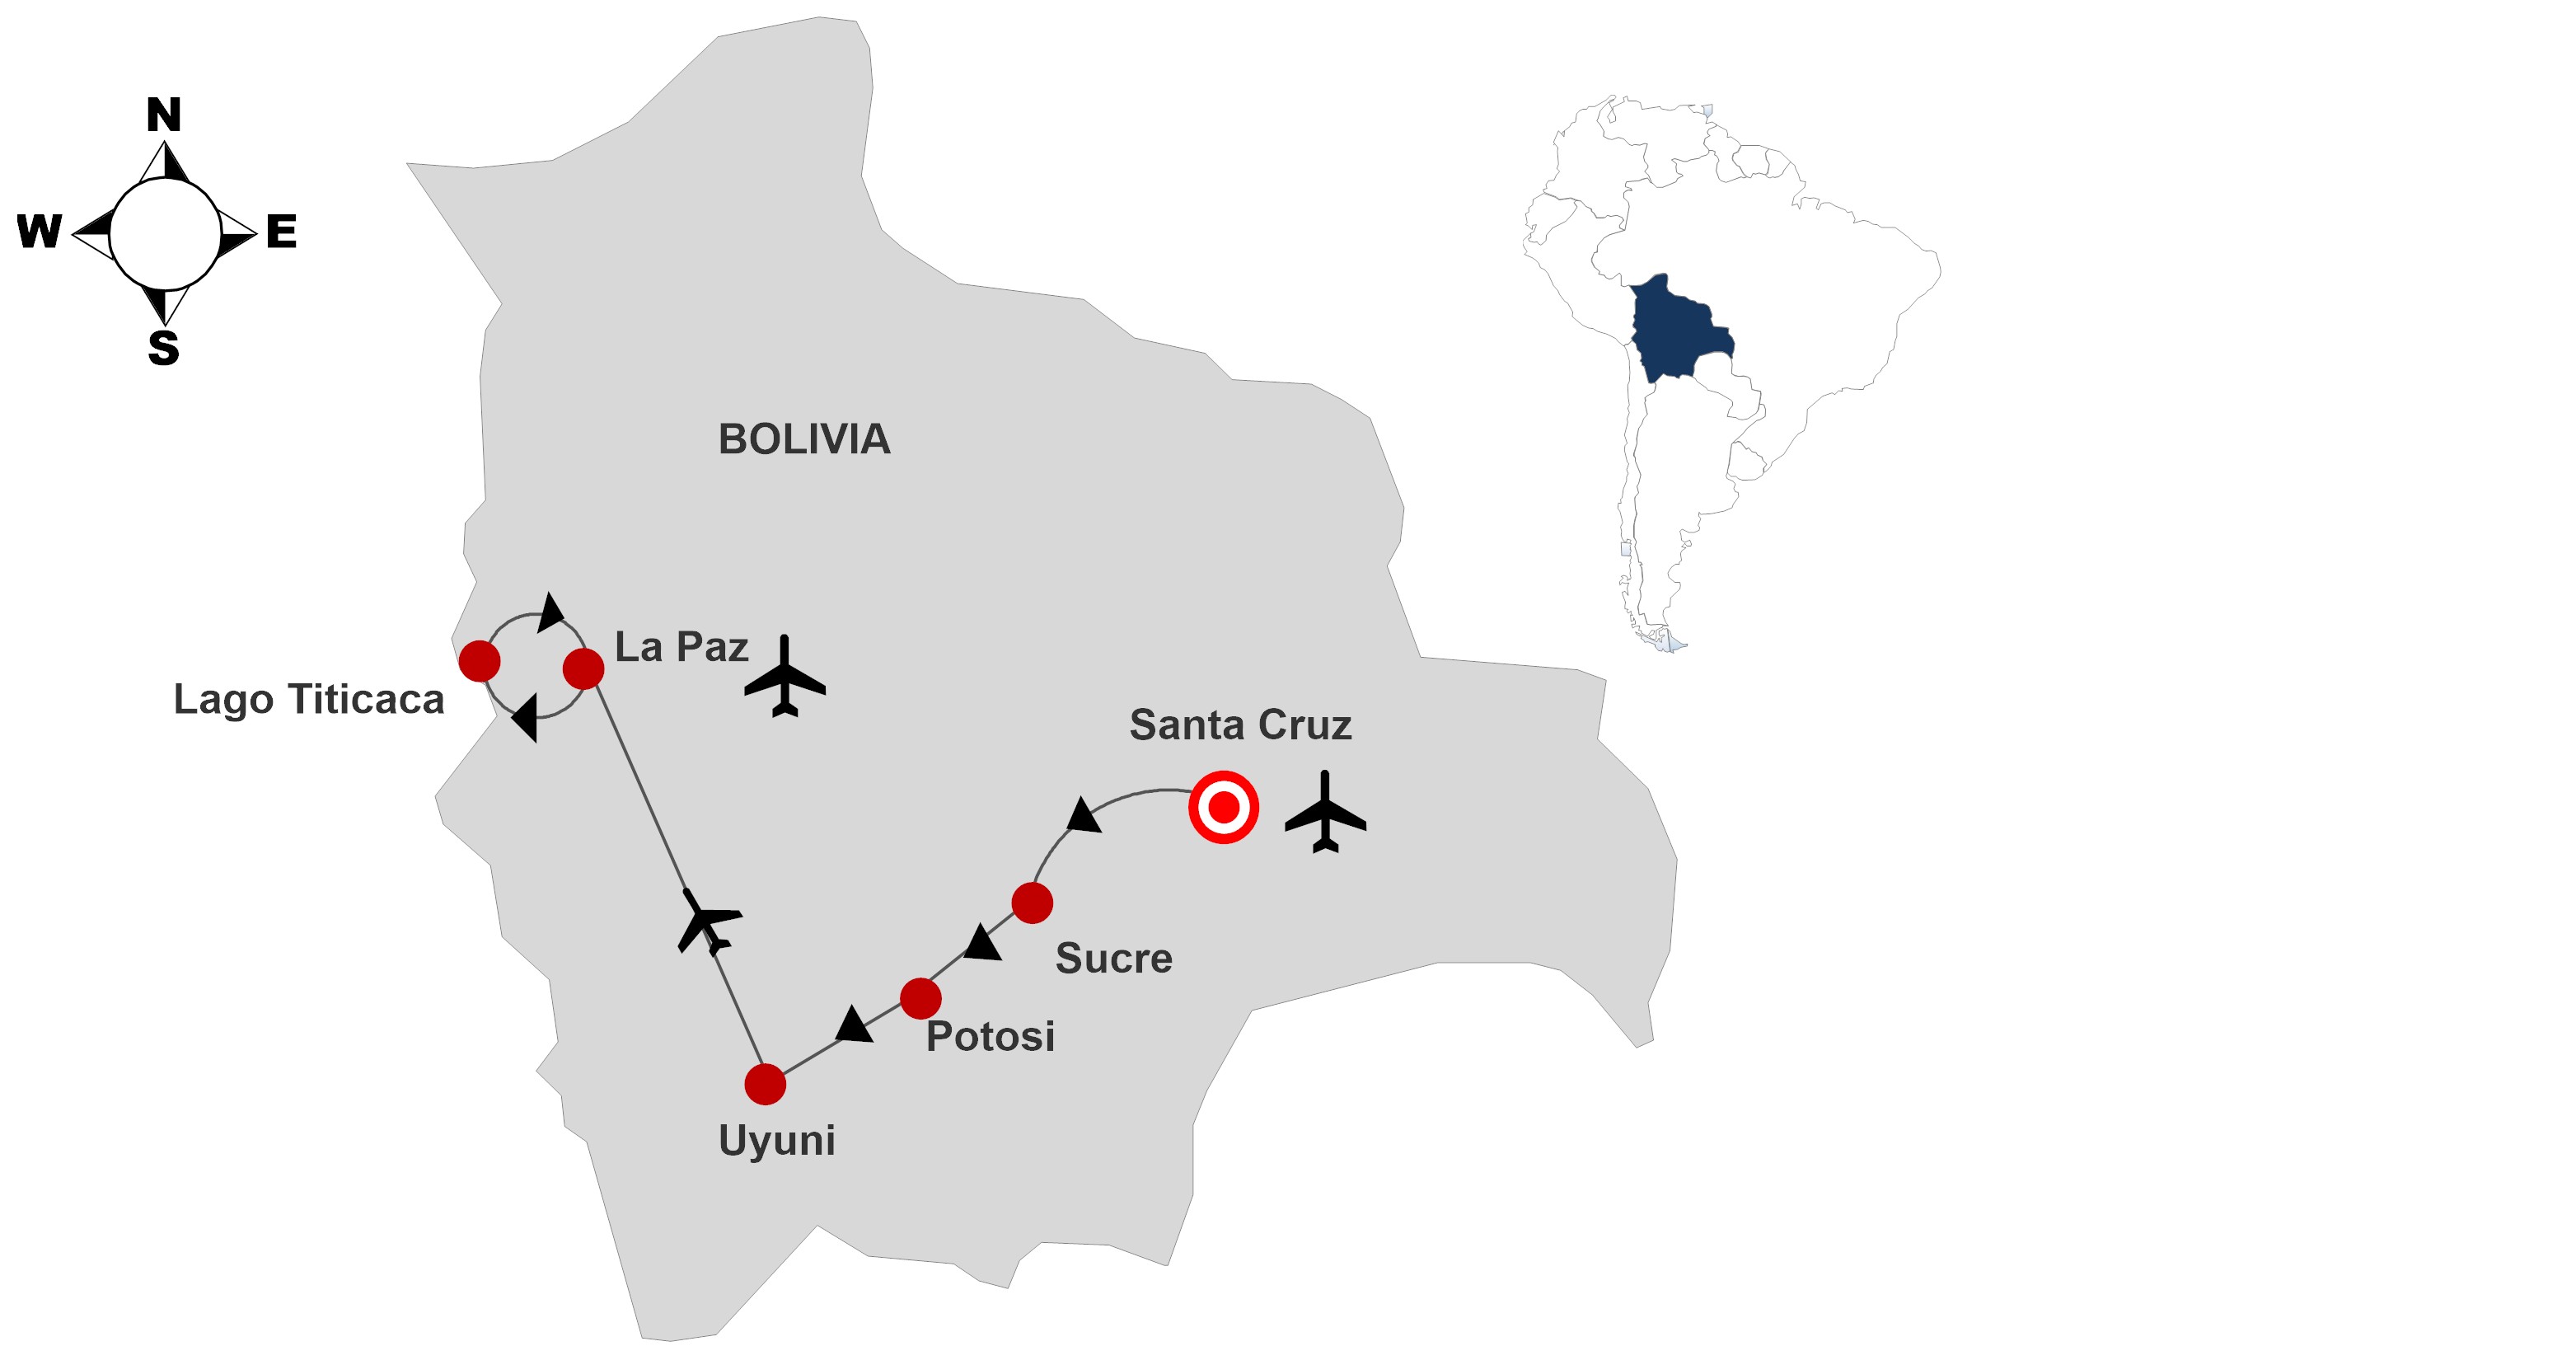 BOLIVIA TOUR CLASSICO